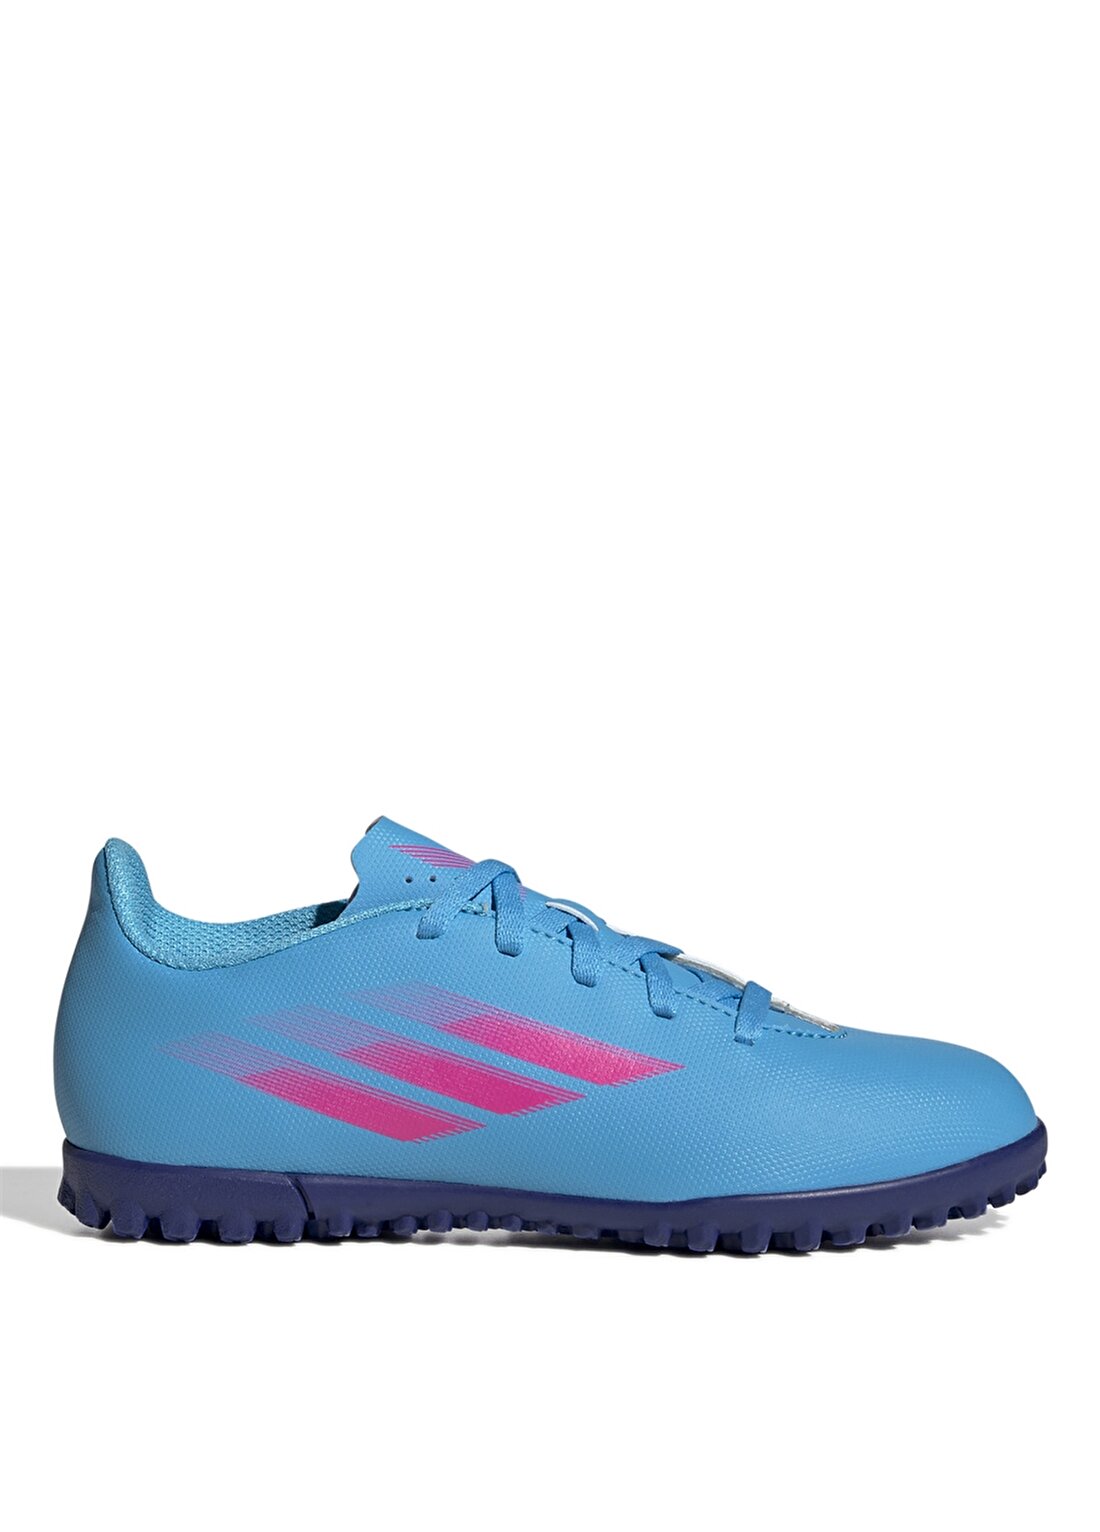 Adidas Pembe - Mavi Erkek Çocuk Halı Saha Ayakkabısı - GW7532 X Speedflow.4 Tf J